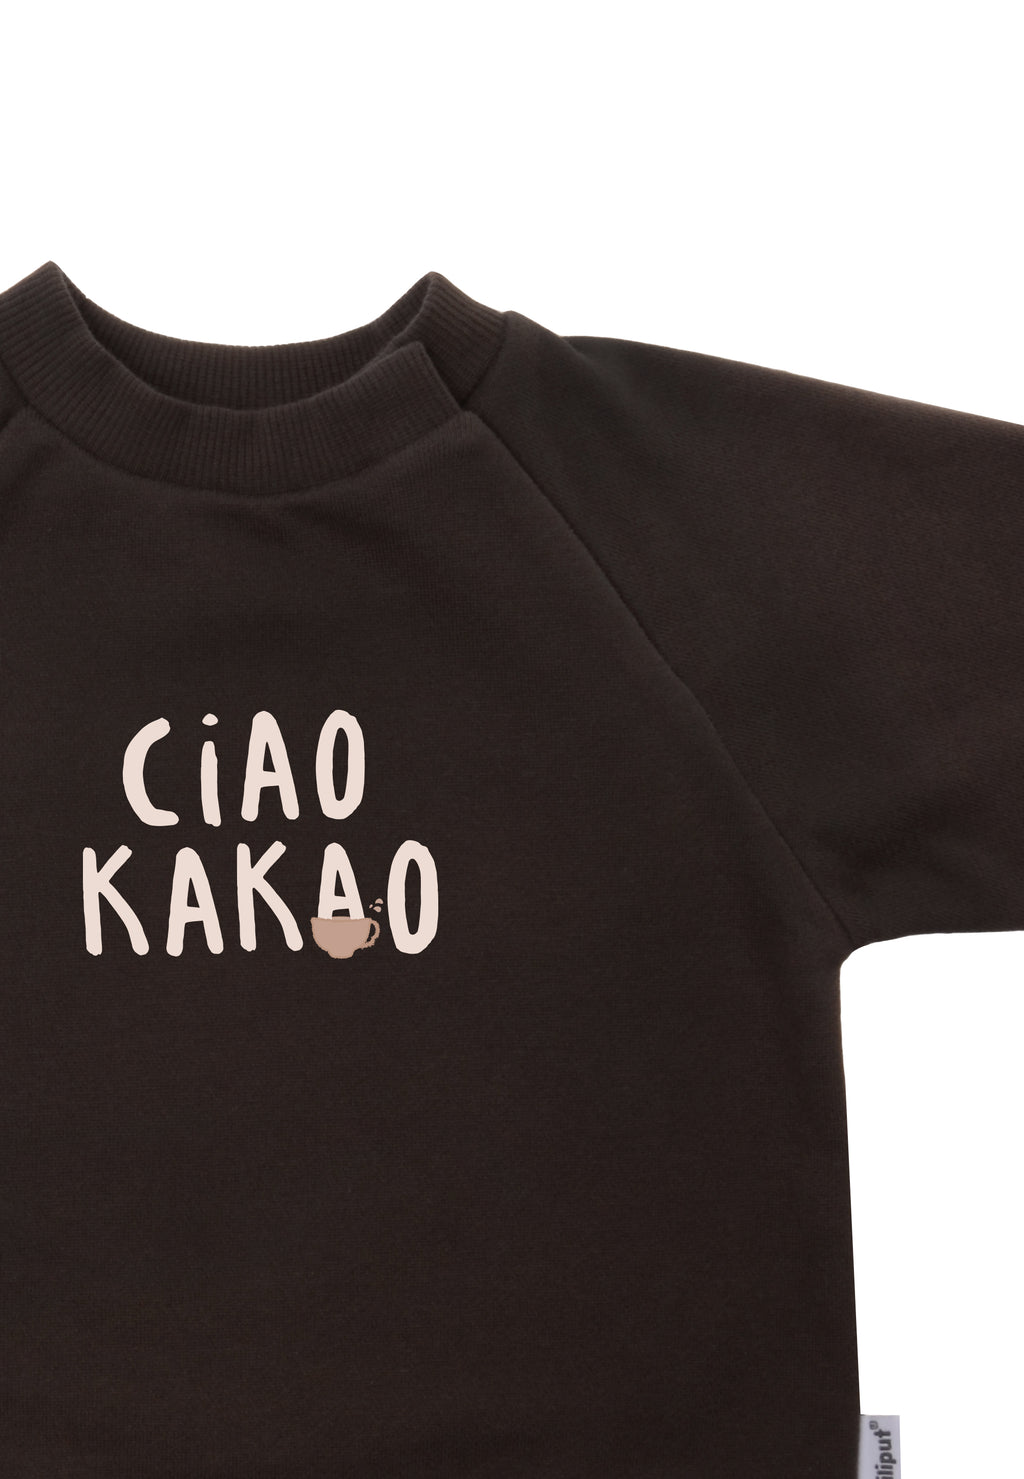 Sweatshirt in braun mit Raglanärmeln und lustigem Wording "Ciao Kakao".